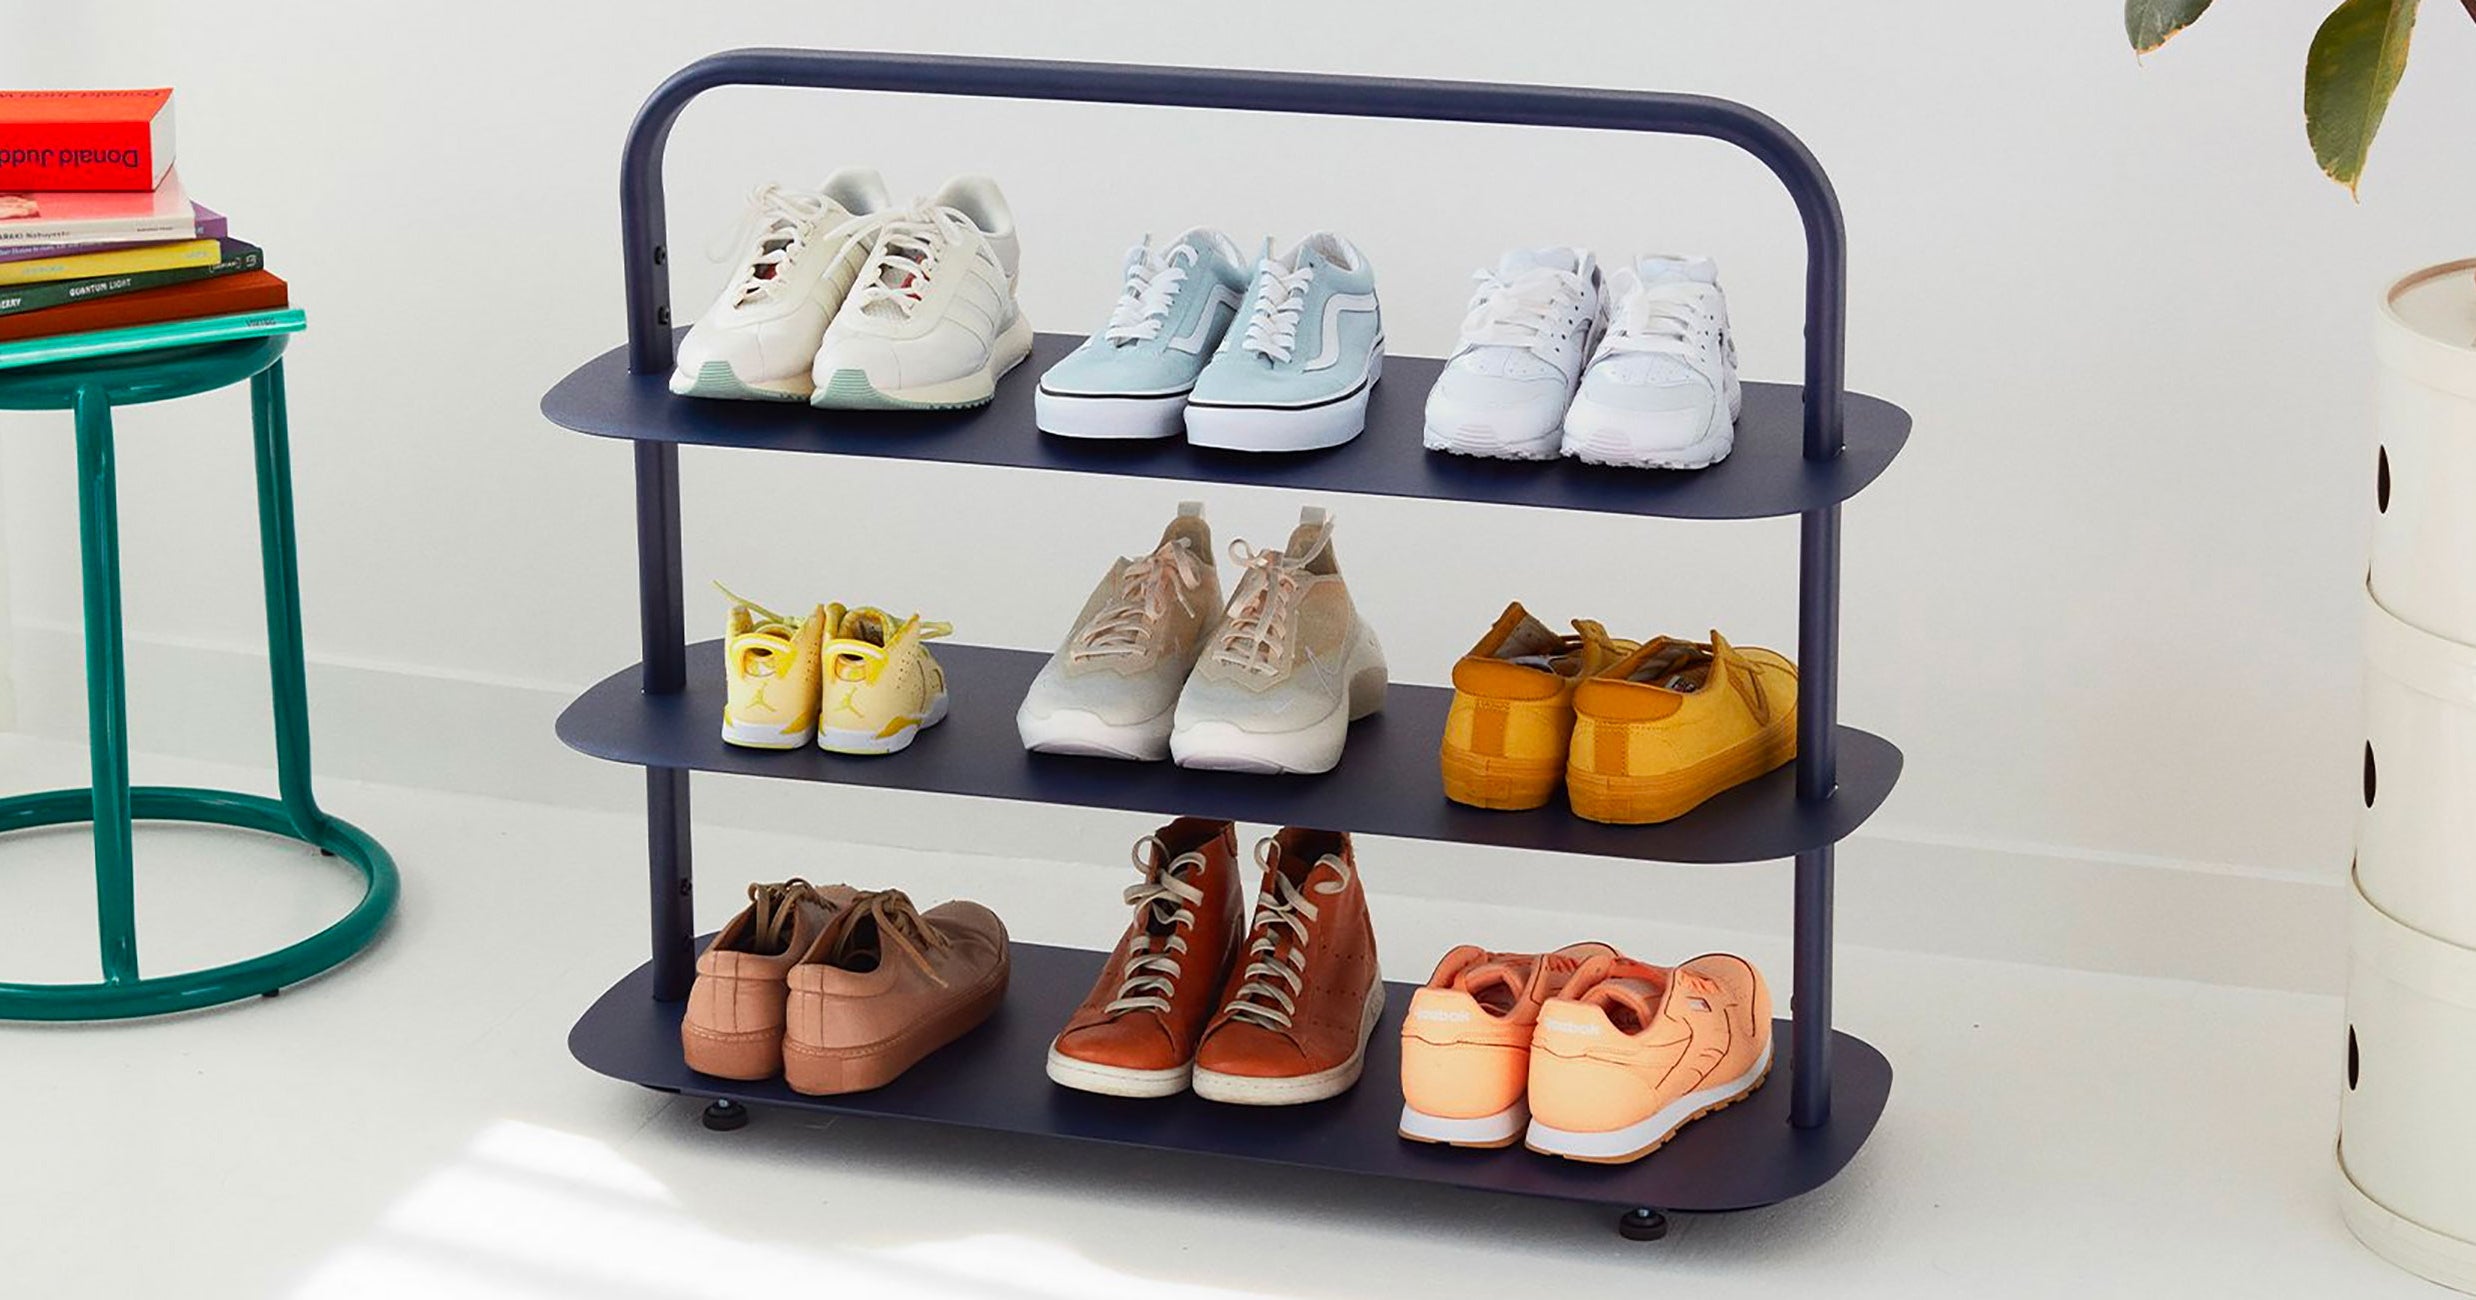 Yamazaki Rolling Shoe Organizer - Best Stylish Under Bed Shoe Storage